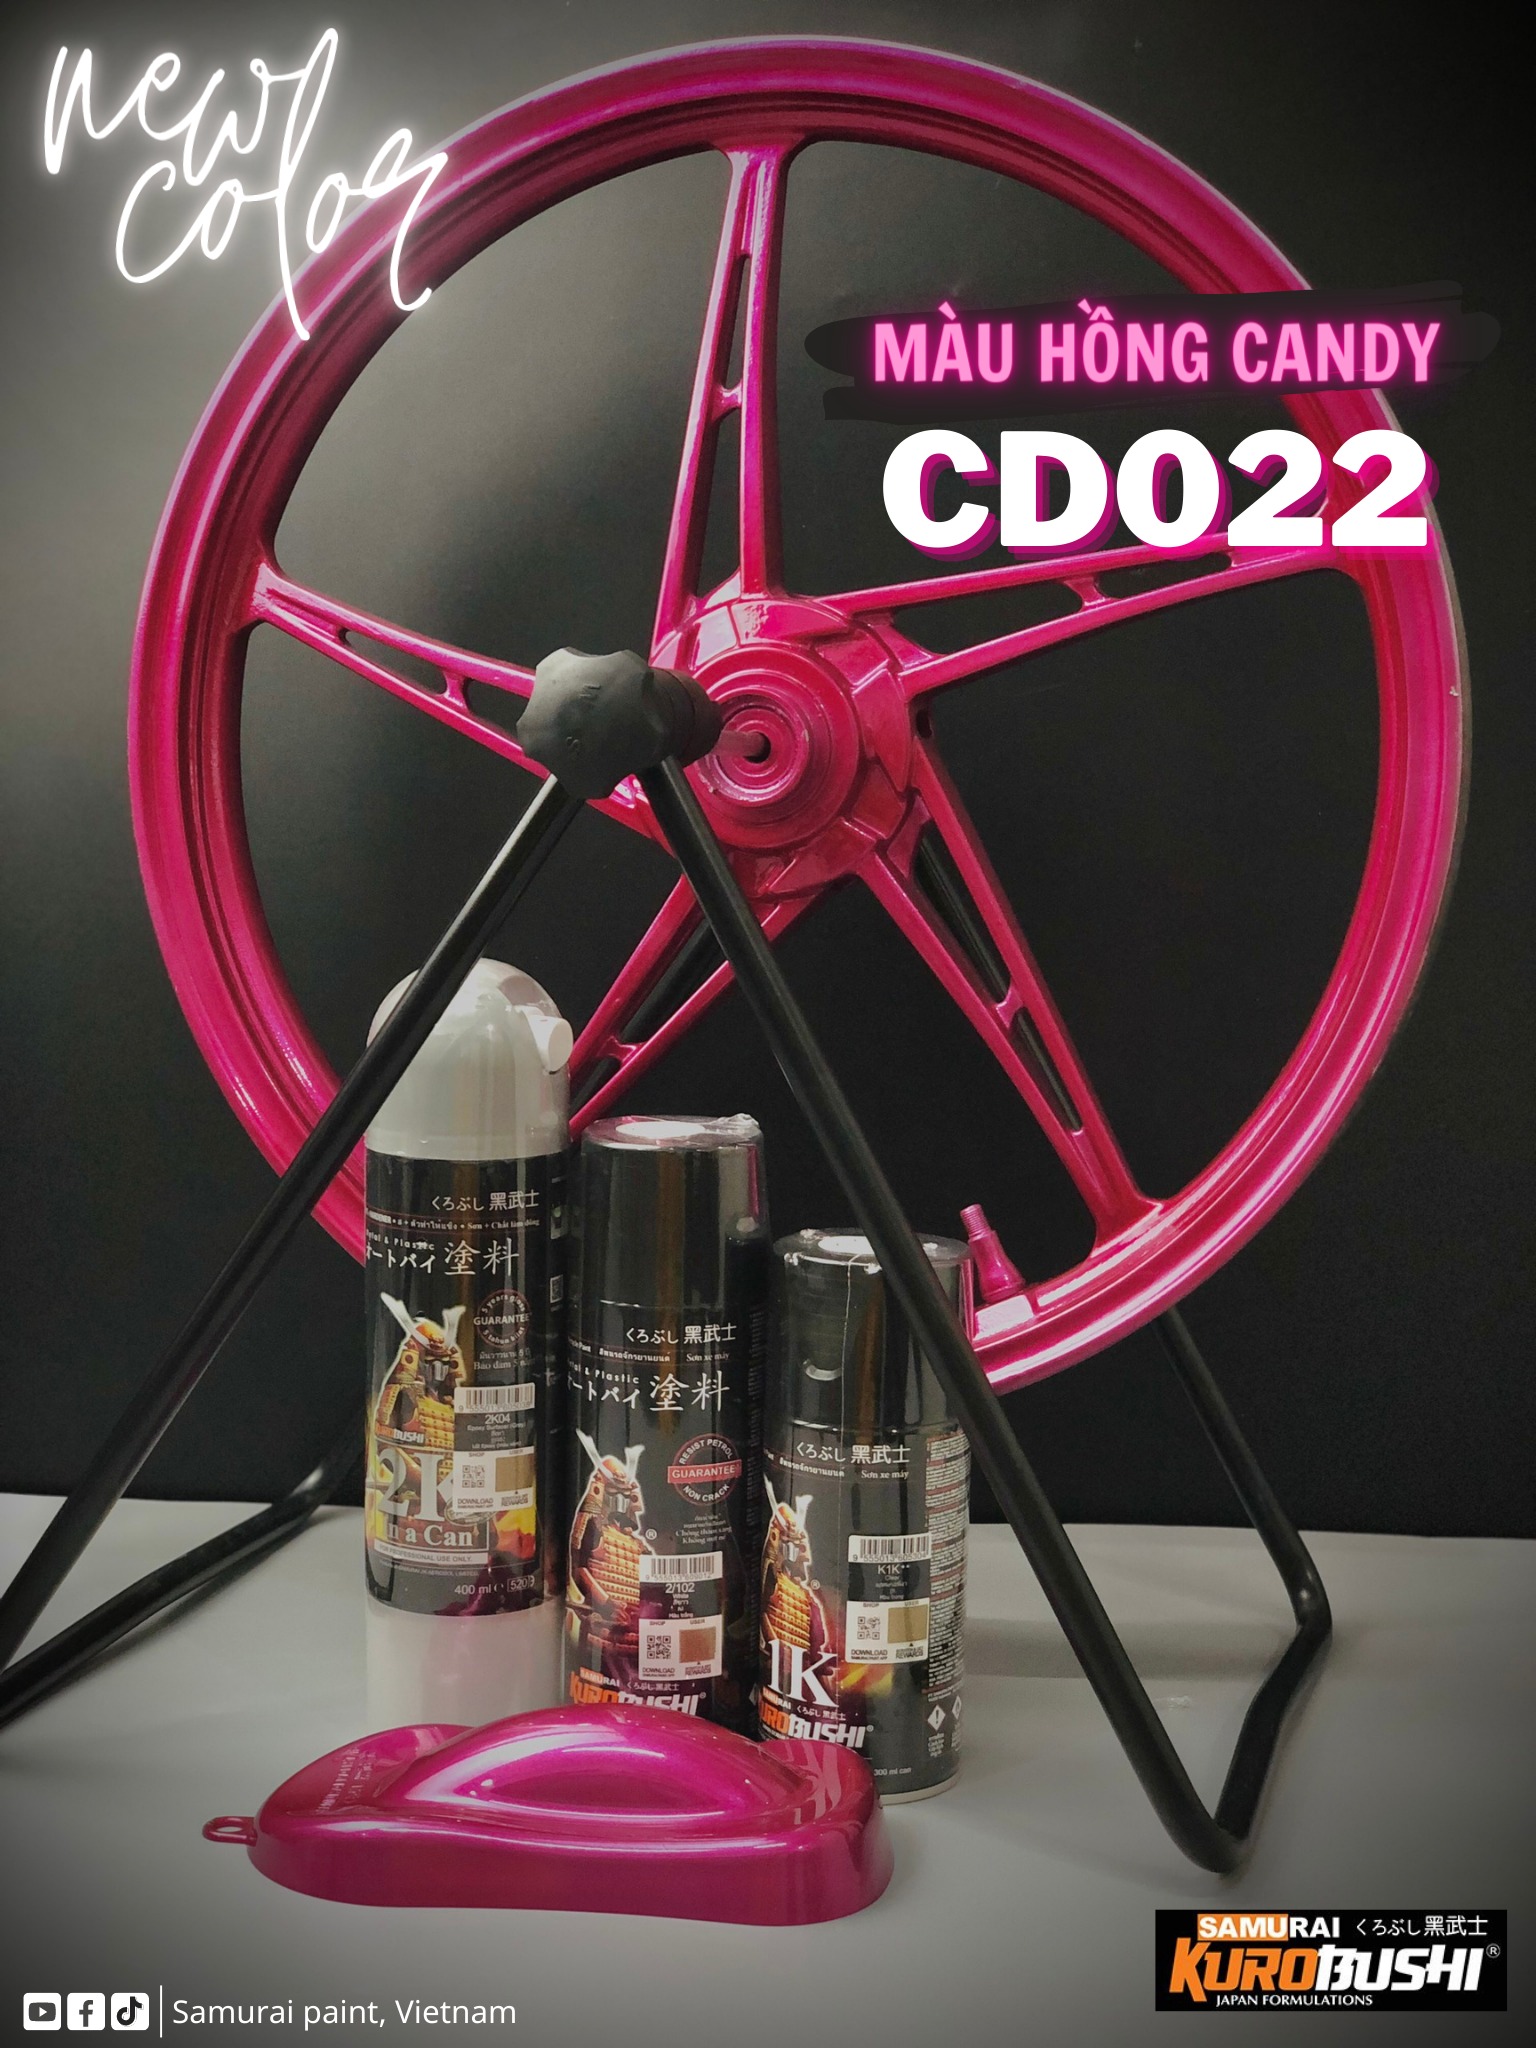 COMBO Sơn Samurai màu hồng candy CD022 gồm 5 chai đủ quy trình (Lót - Nền 124 – Màu 1701 - Màu CD022 - Bóng )